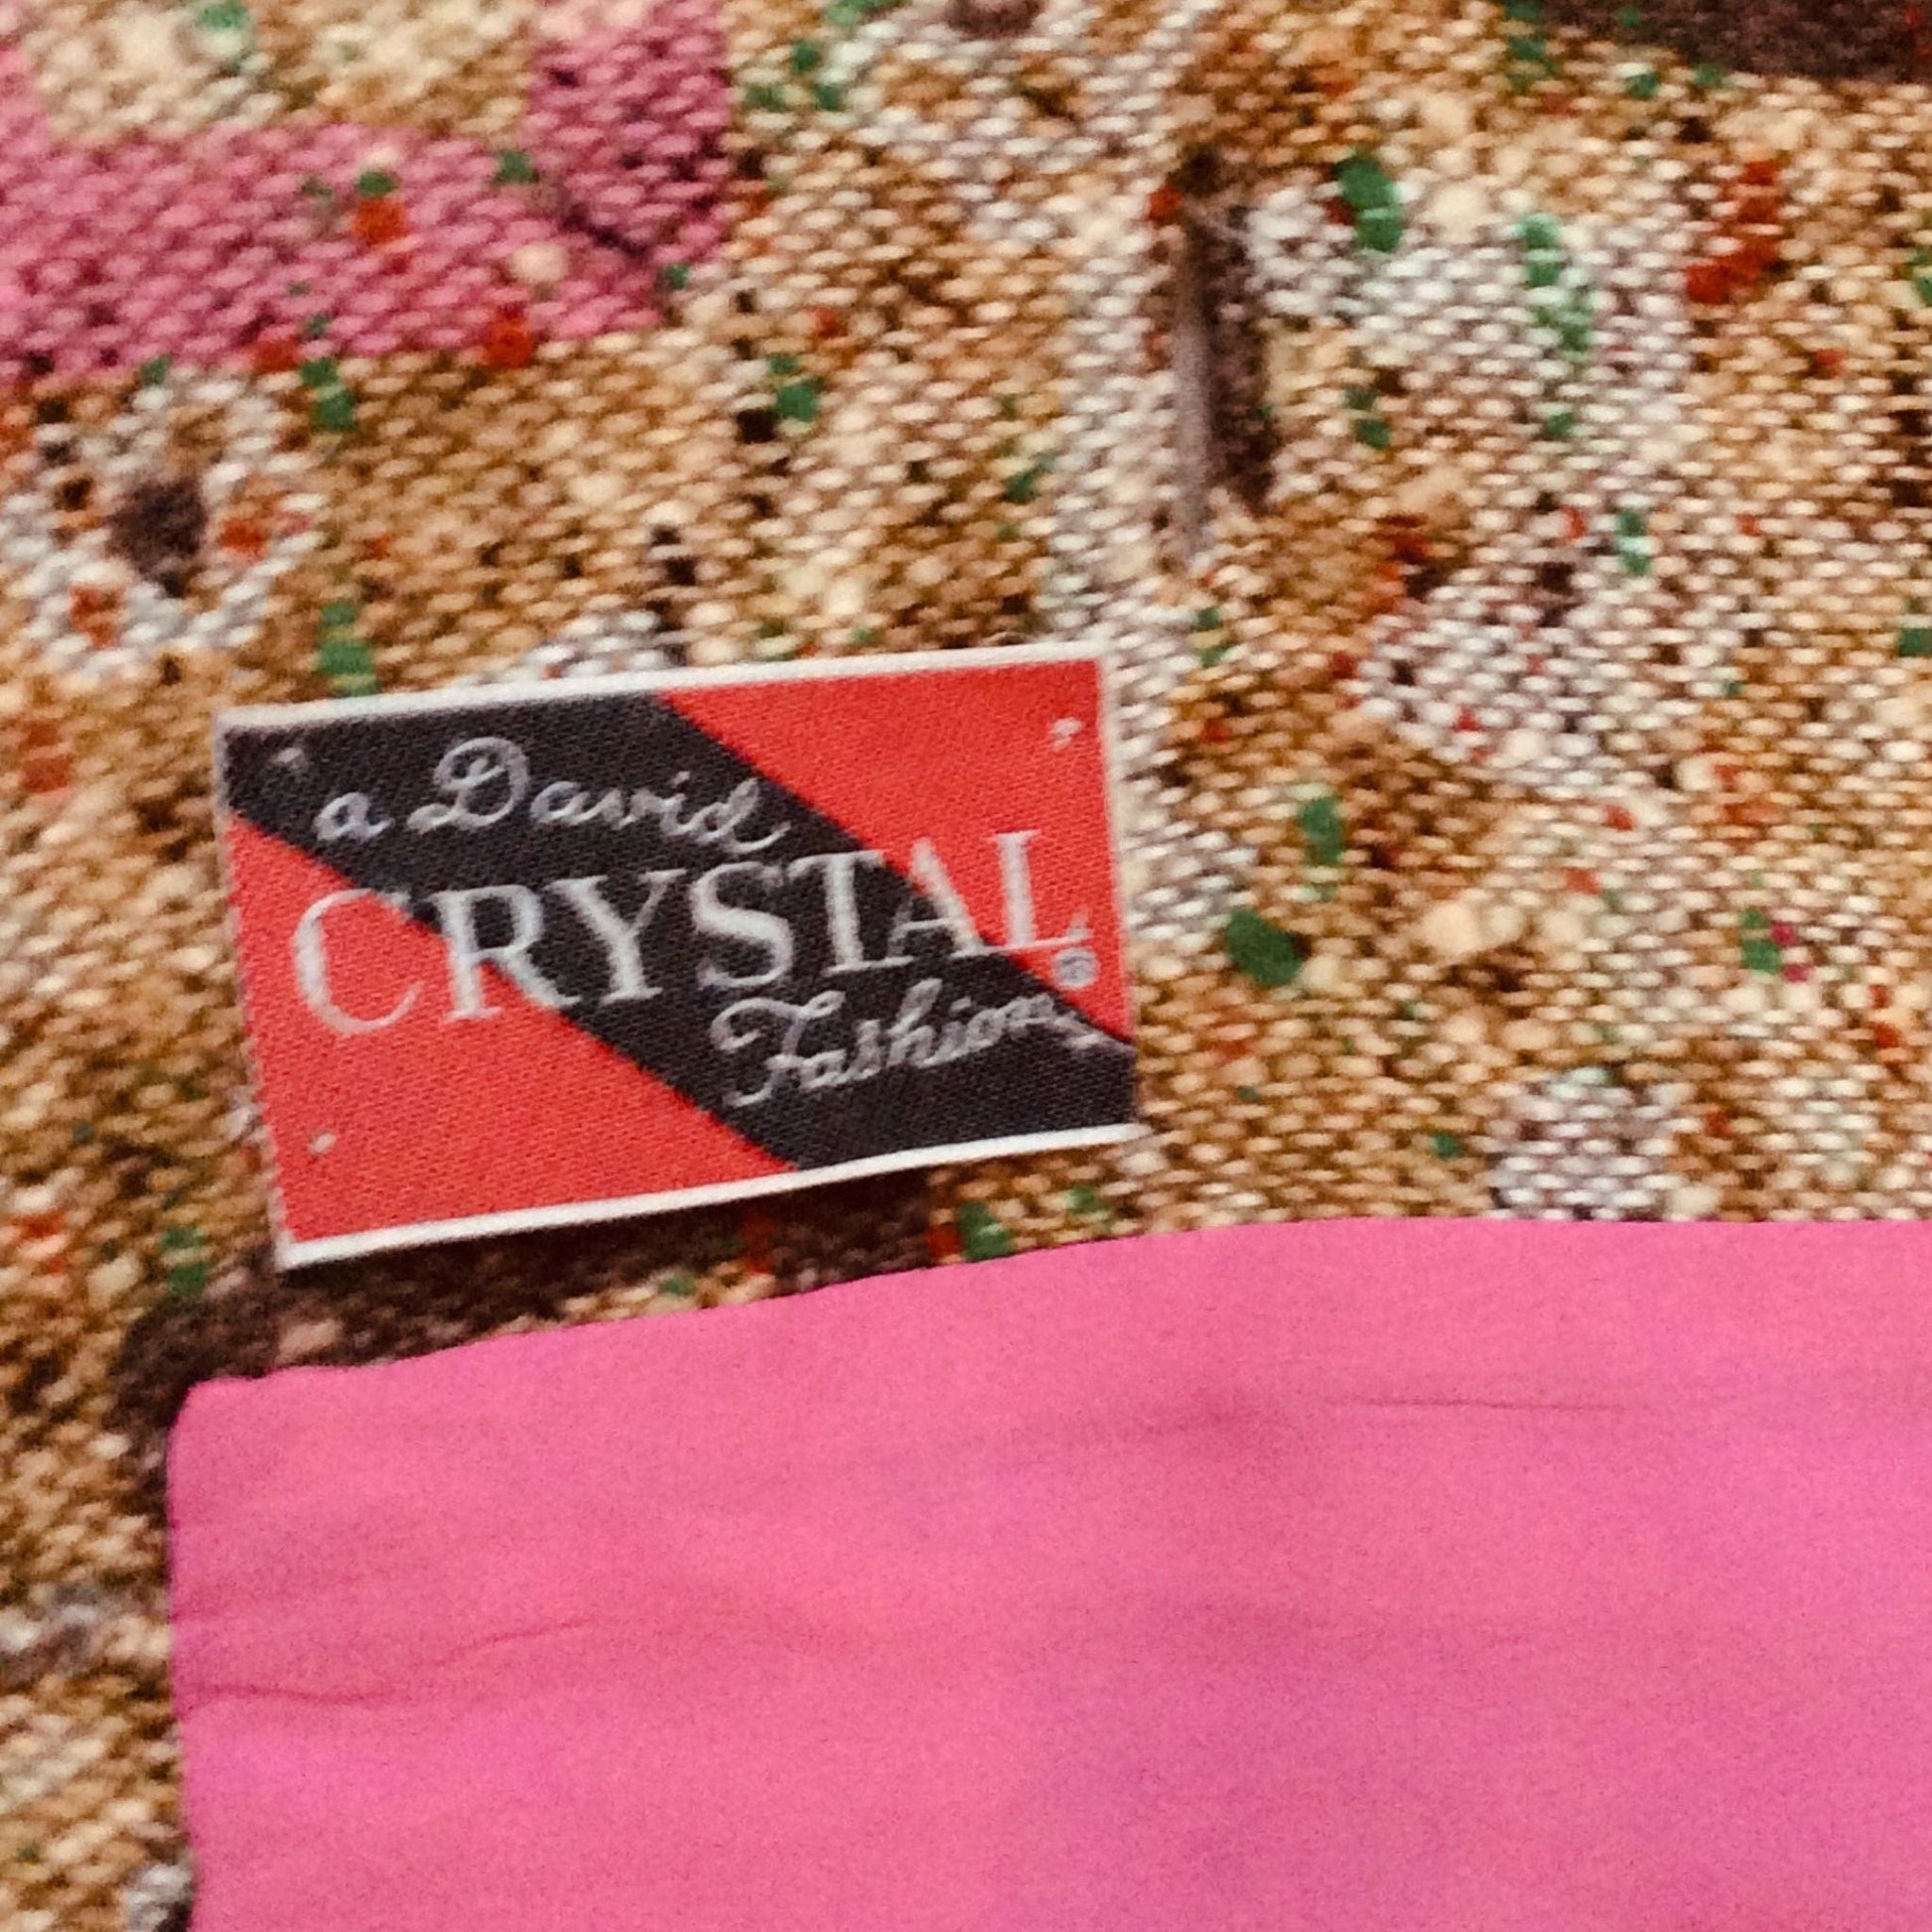 David Crystal Skirt Suit Small / Multi / Vintage 1970s